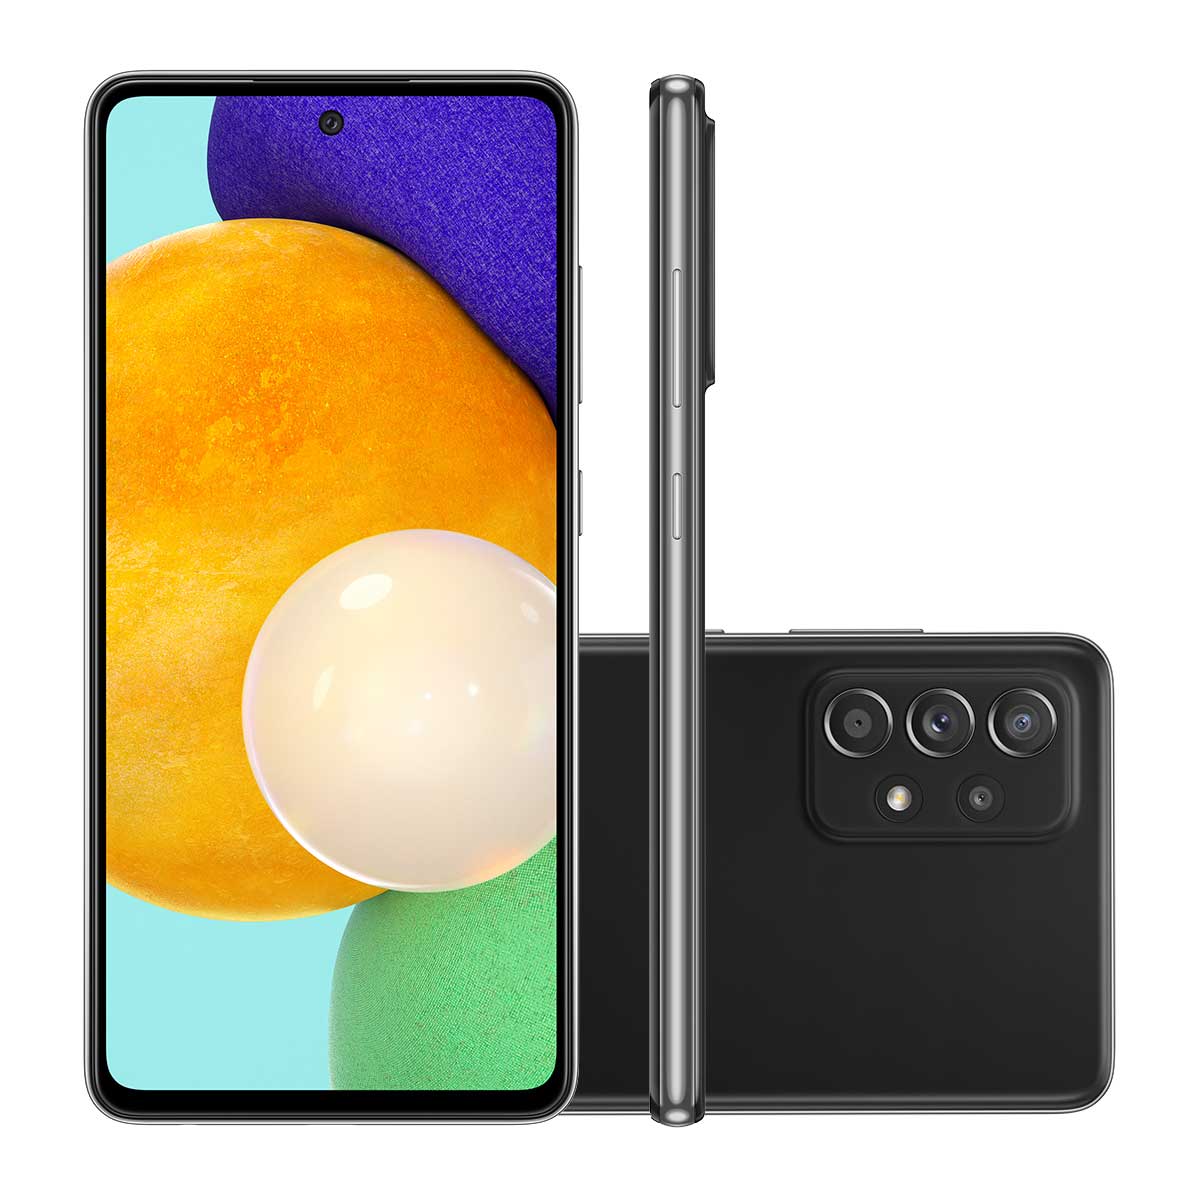 Smartphone Samsung A52 128GB Preto 4G Tela 6.5” Câmera Quádrupla 64MP Selfie 32MP Dual Chip Android 11.0